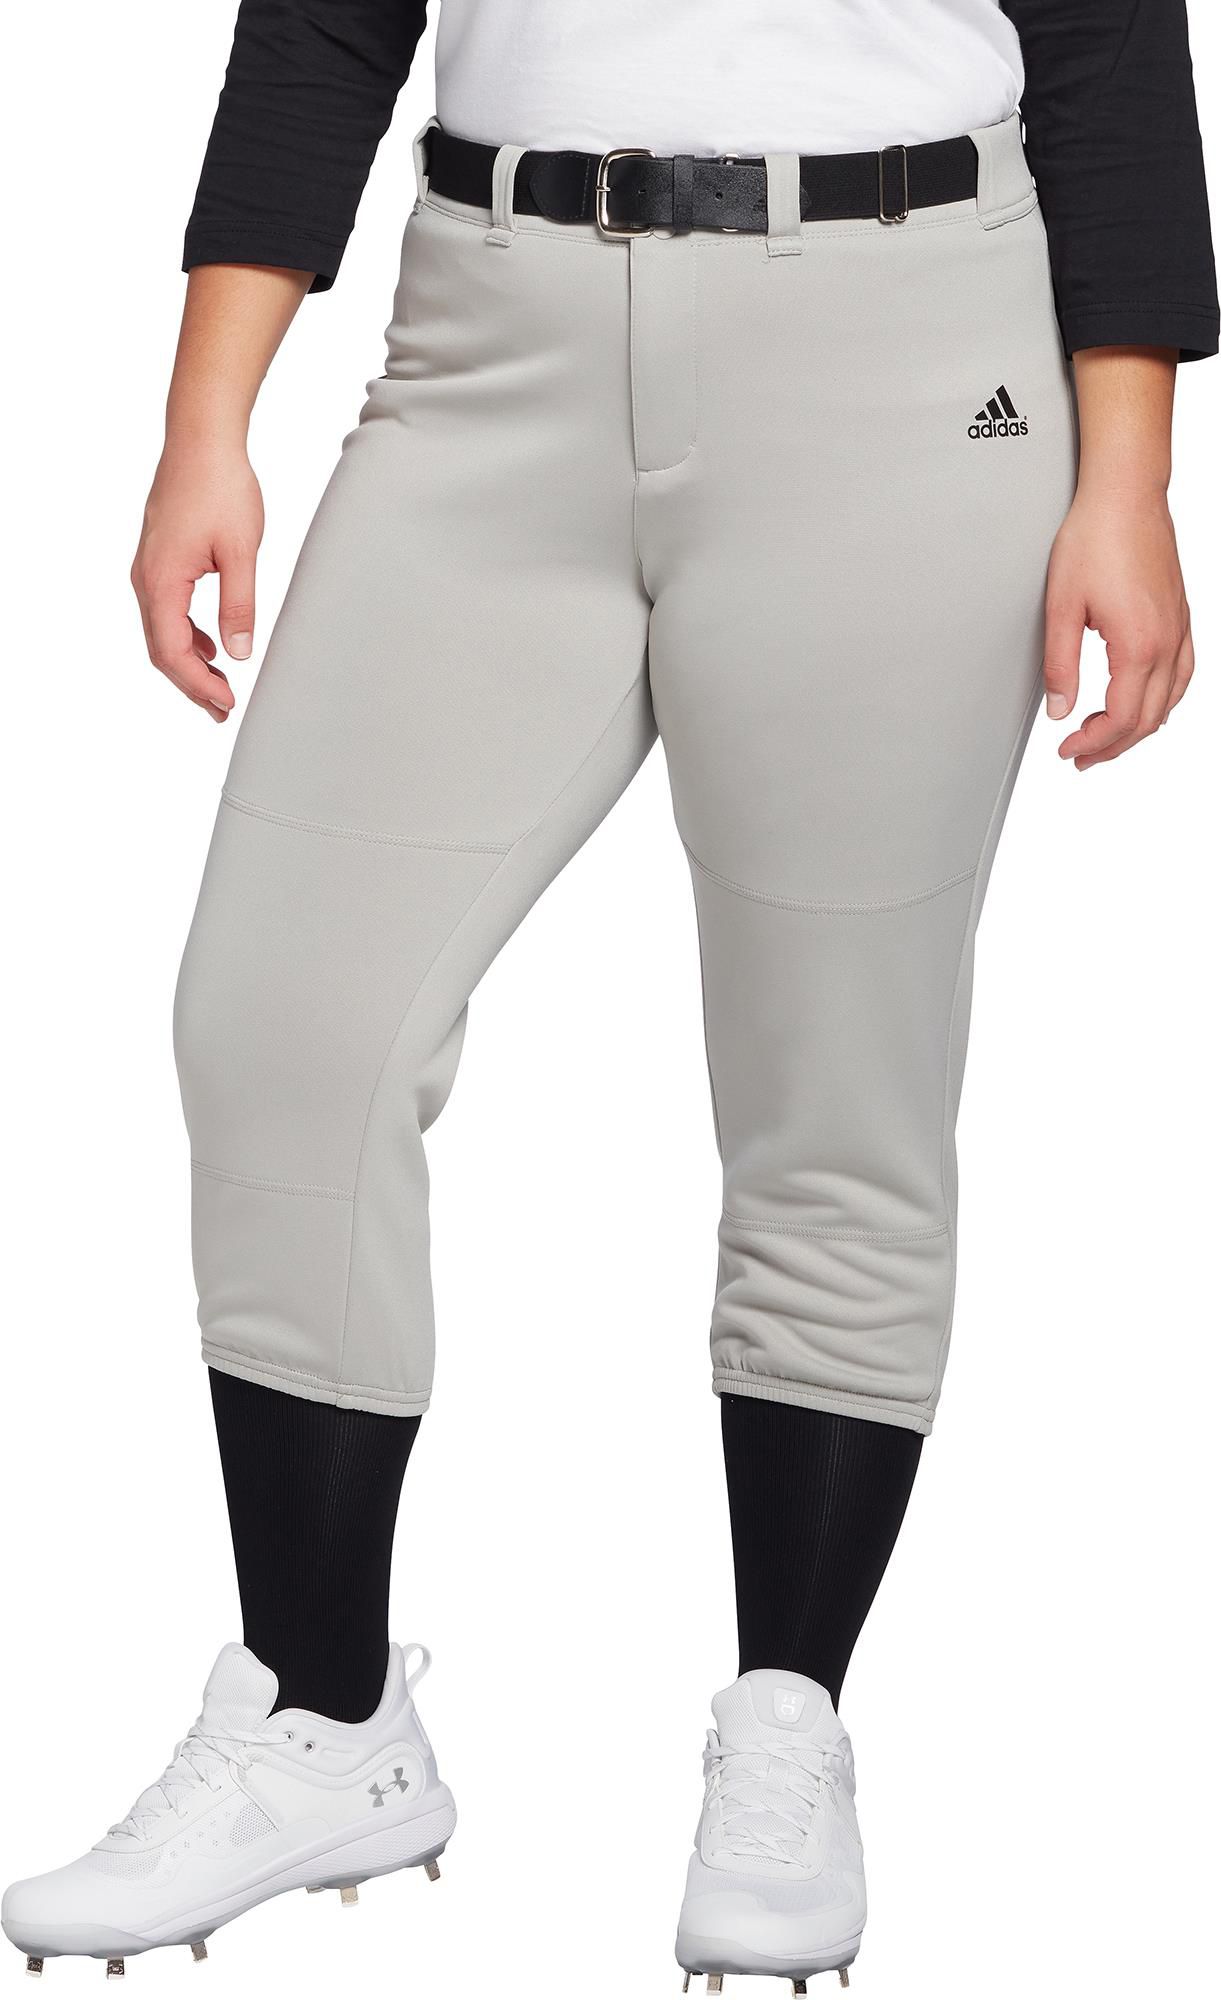 adidas softball pants size chart